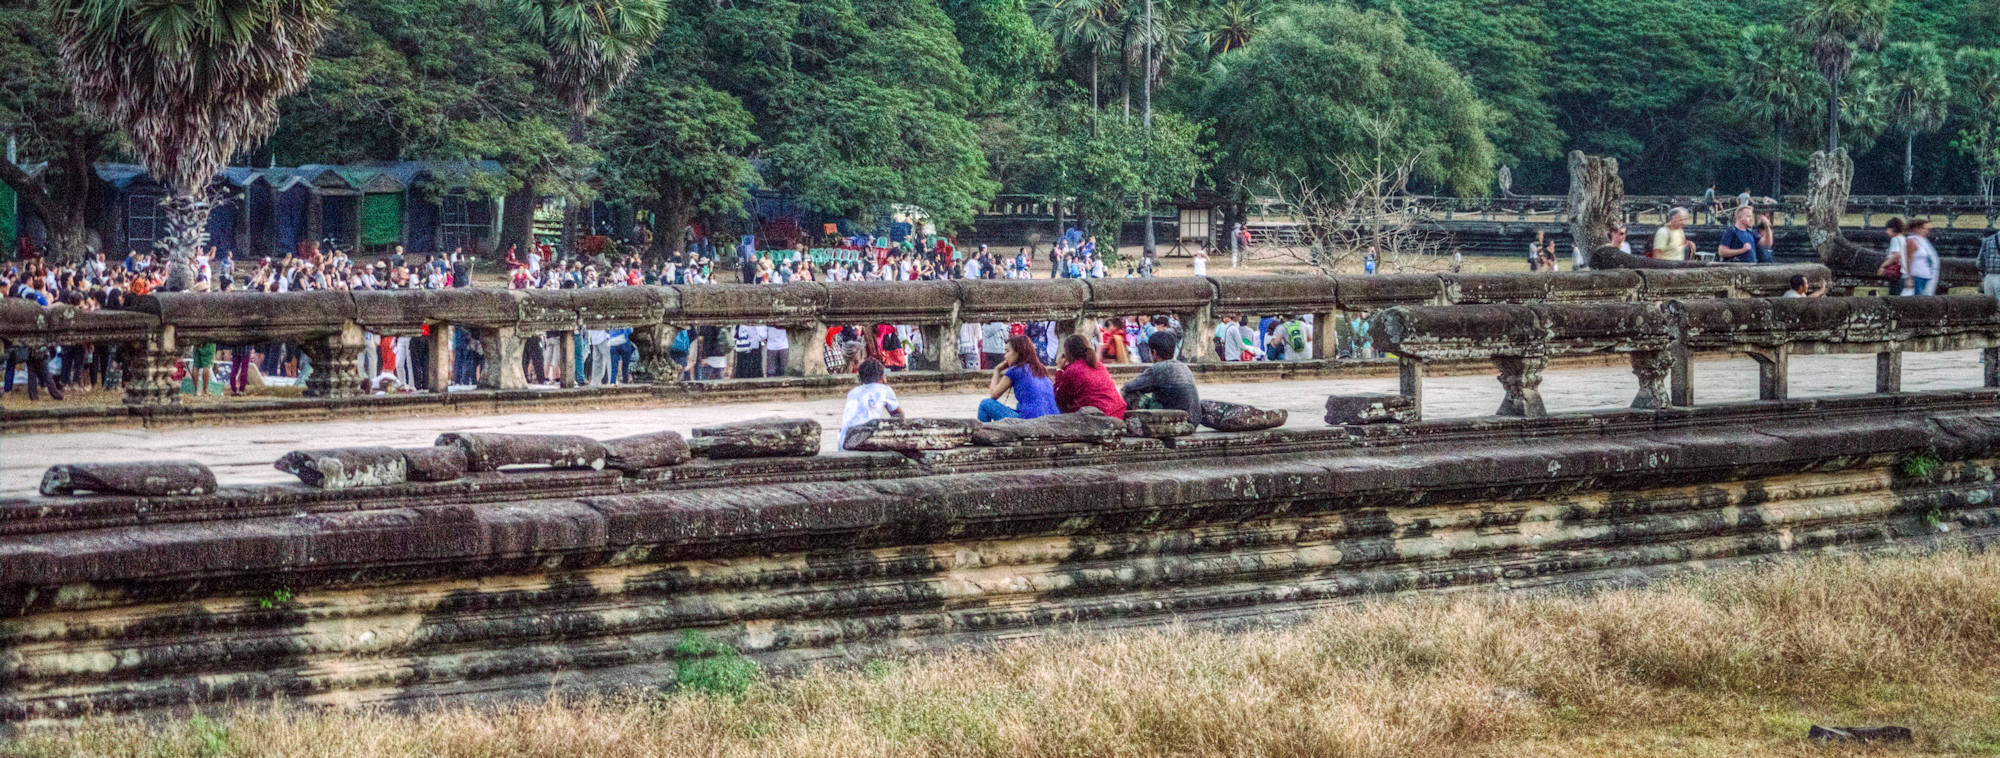 Fotoparade Mogroach Urlaubsbilder und die ganze Wahrheit Angkor Wat